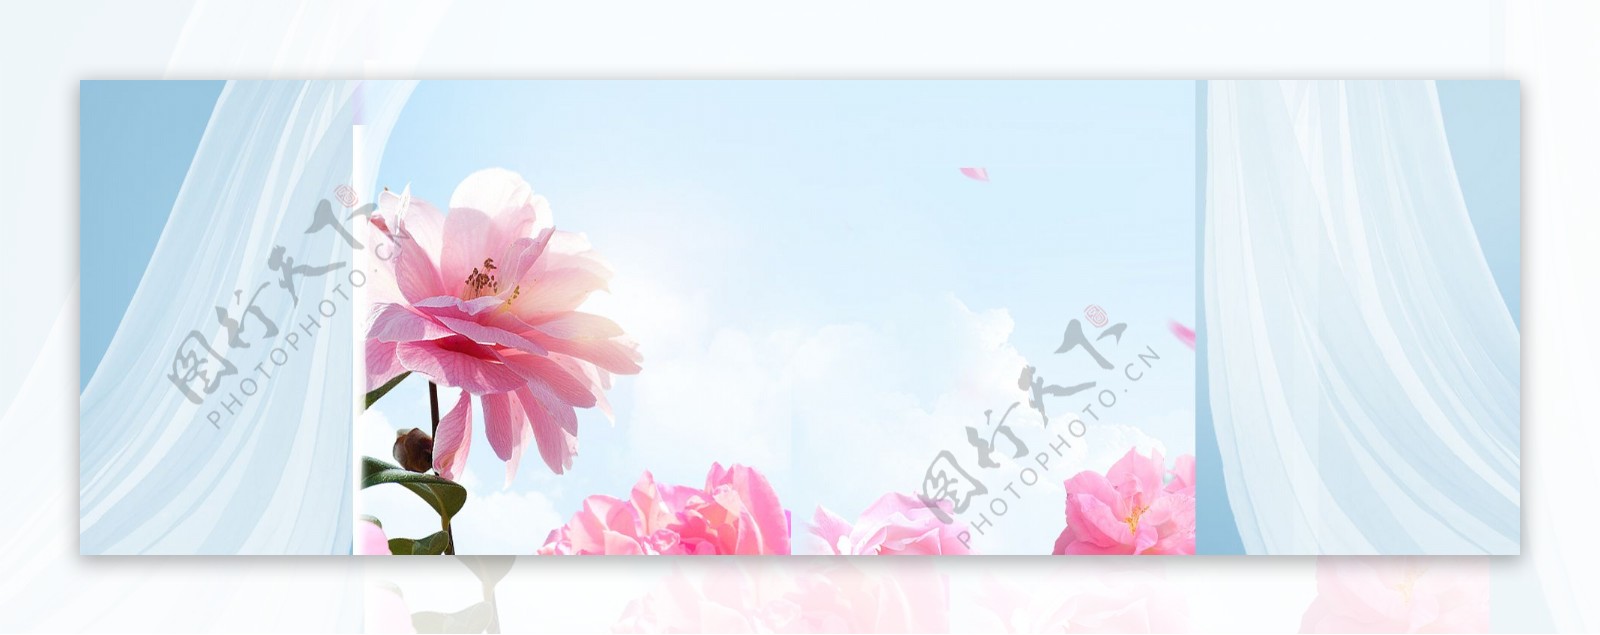 清新红色花朵banner背景素材